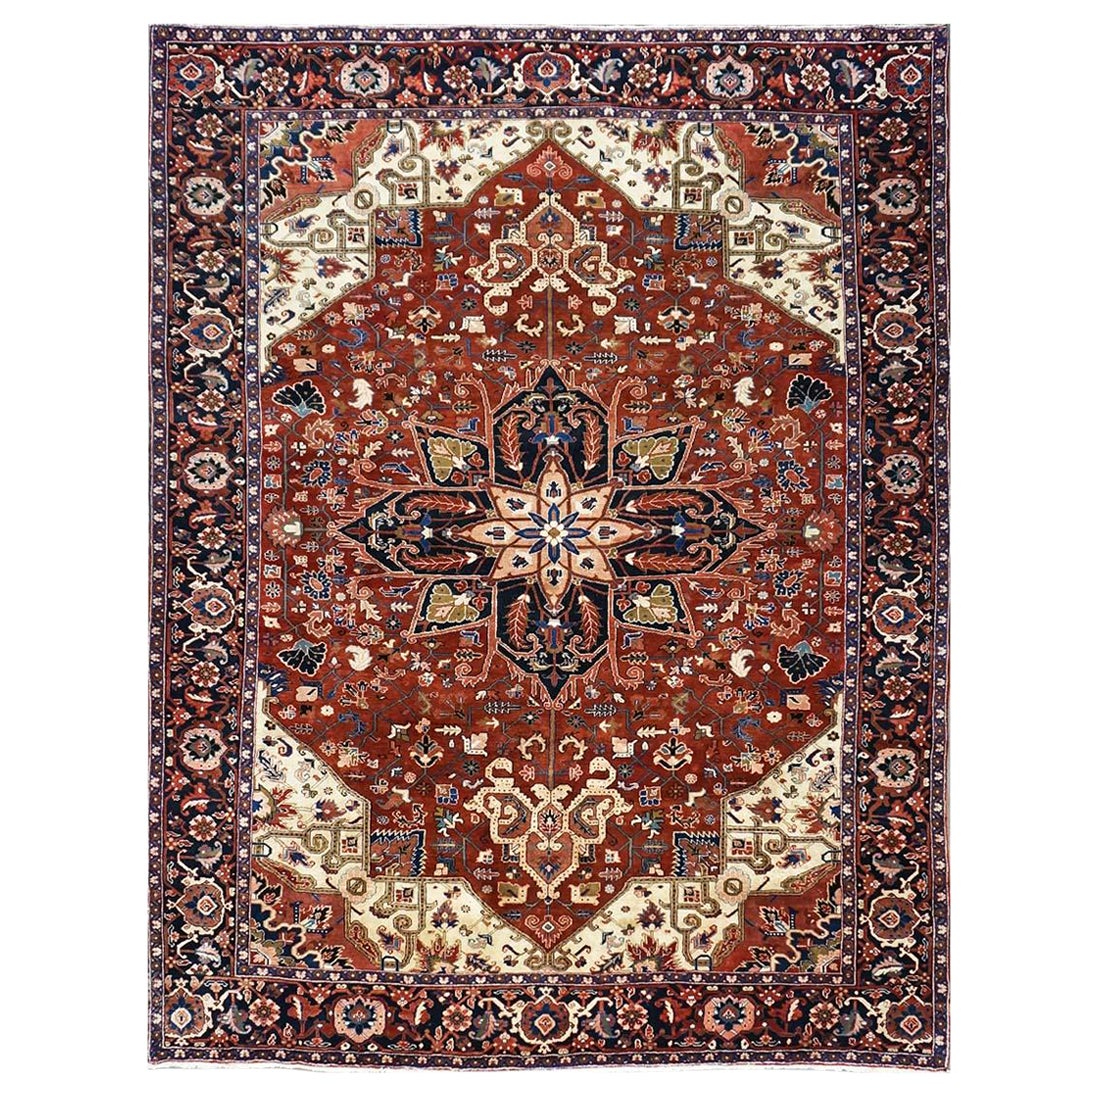 Persischer Heriz-Teppich in Rot, Marineblau und Elfenbein, handgefertigt, 10x13